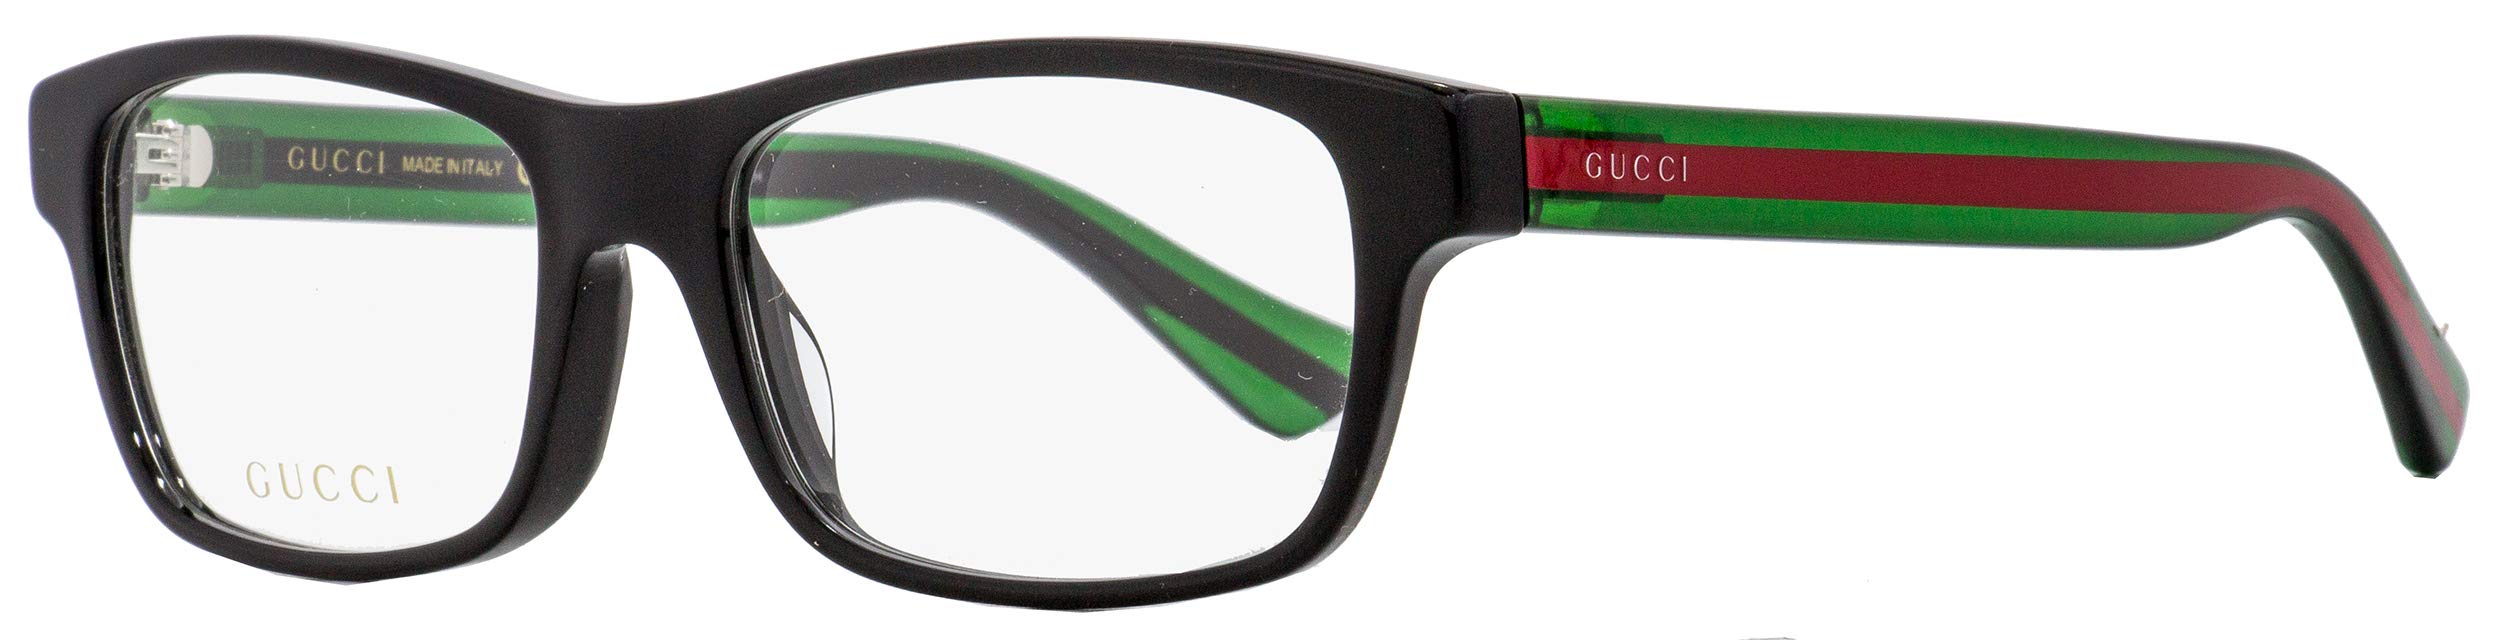 Mua Eyeglasses Gucci GG 0006 OA- 002 002 BLACK/GREEN trên Amazon Mỹ chính  hãng 2023 | Giaonhan247